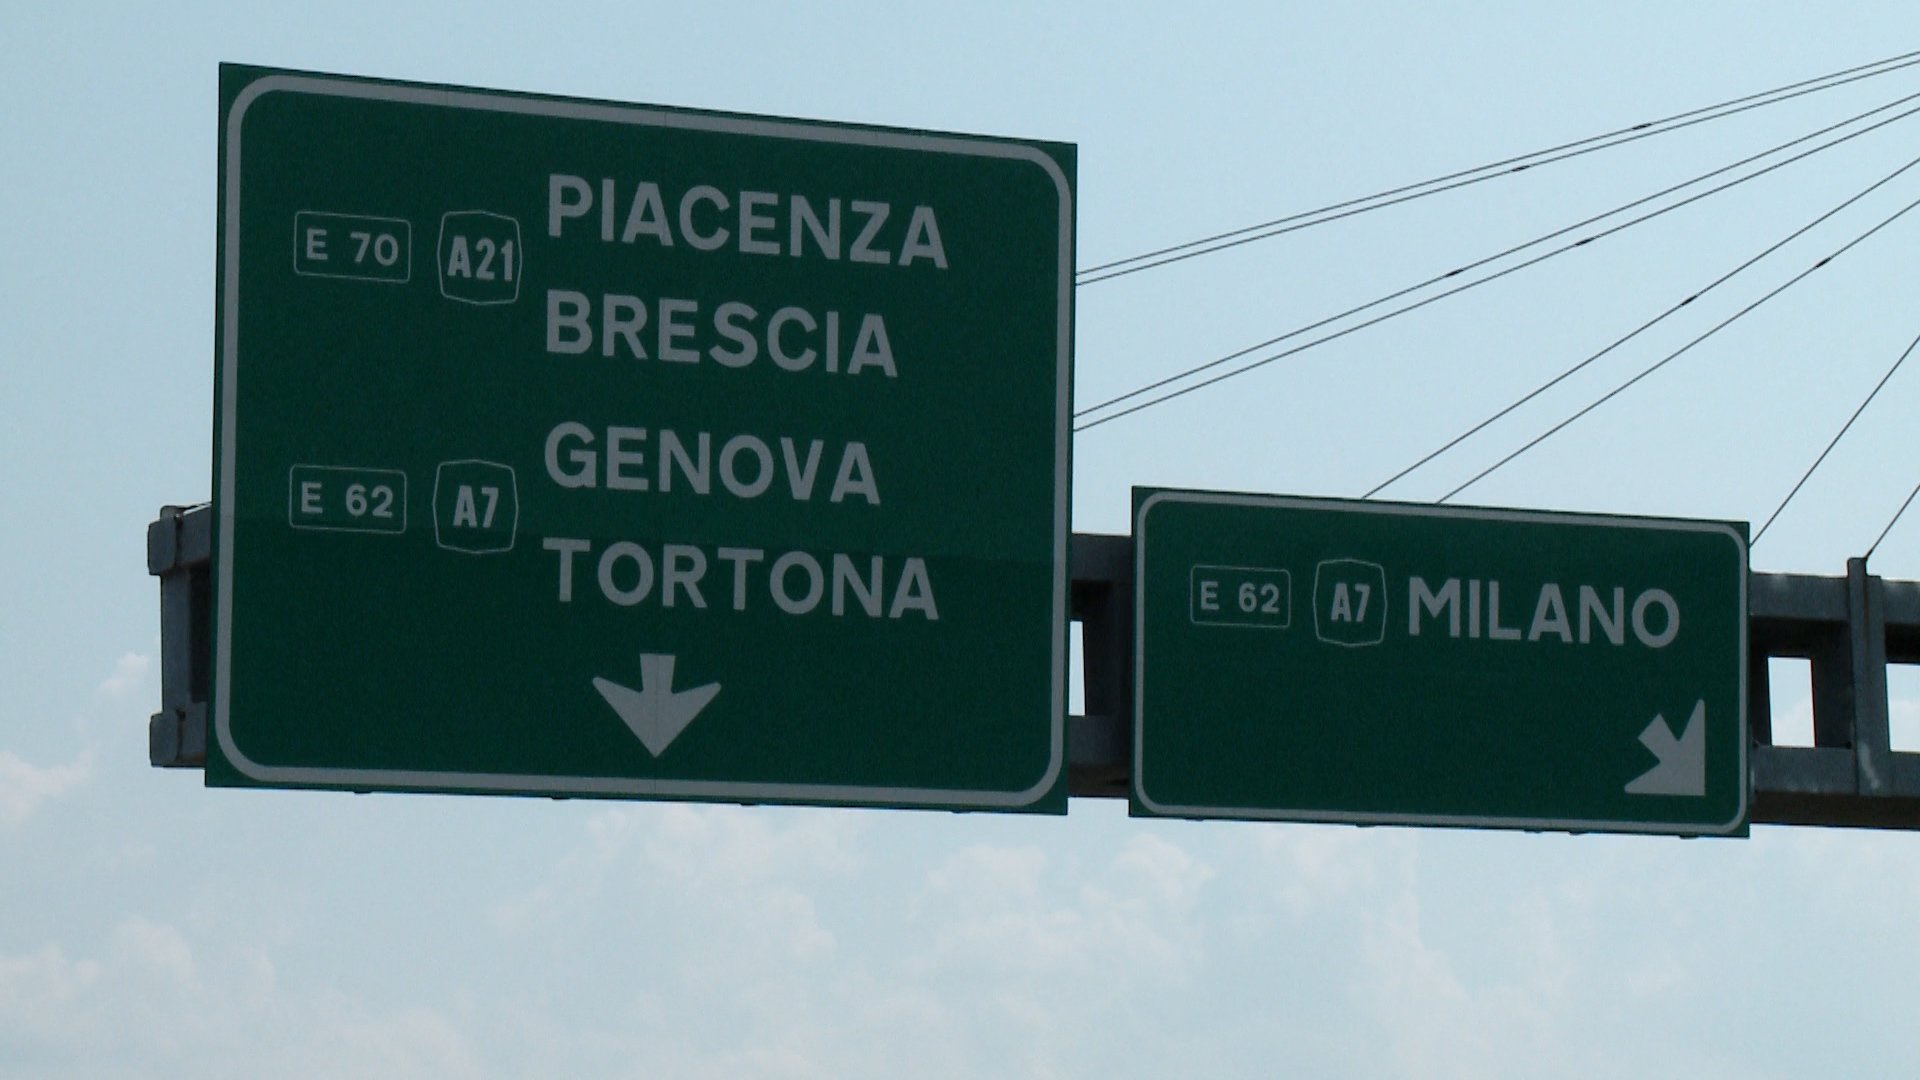 Dal 10 luglio chiusura ispezioni su autostrade verso la Liguria e ripristino 2 corsie